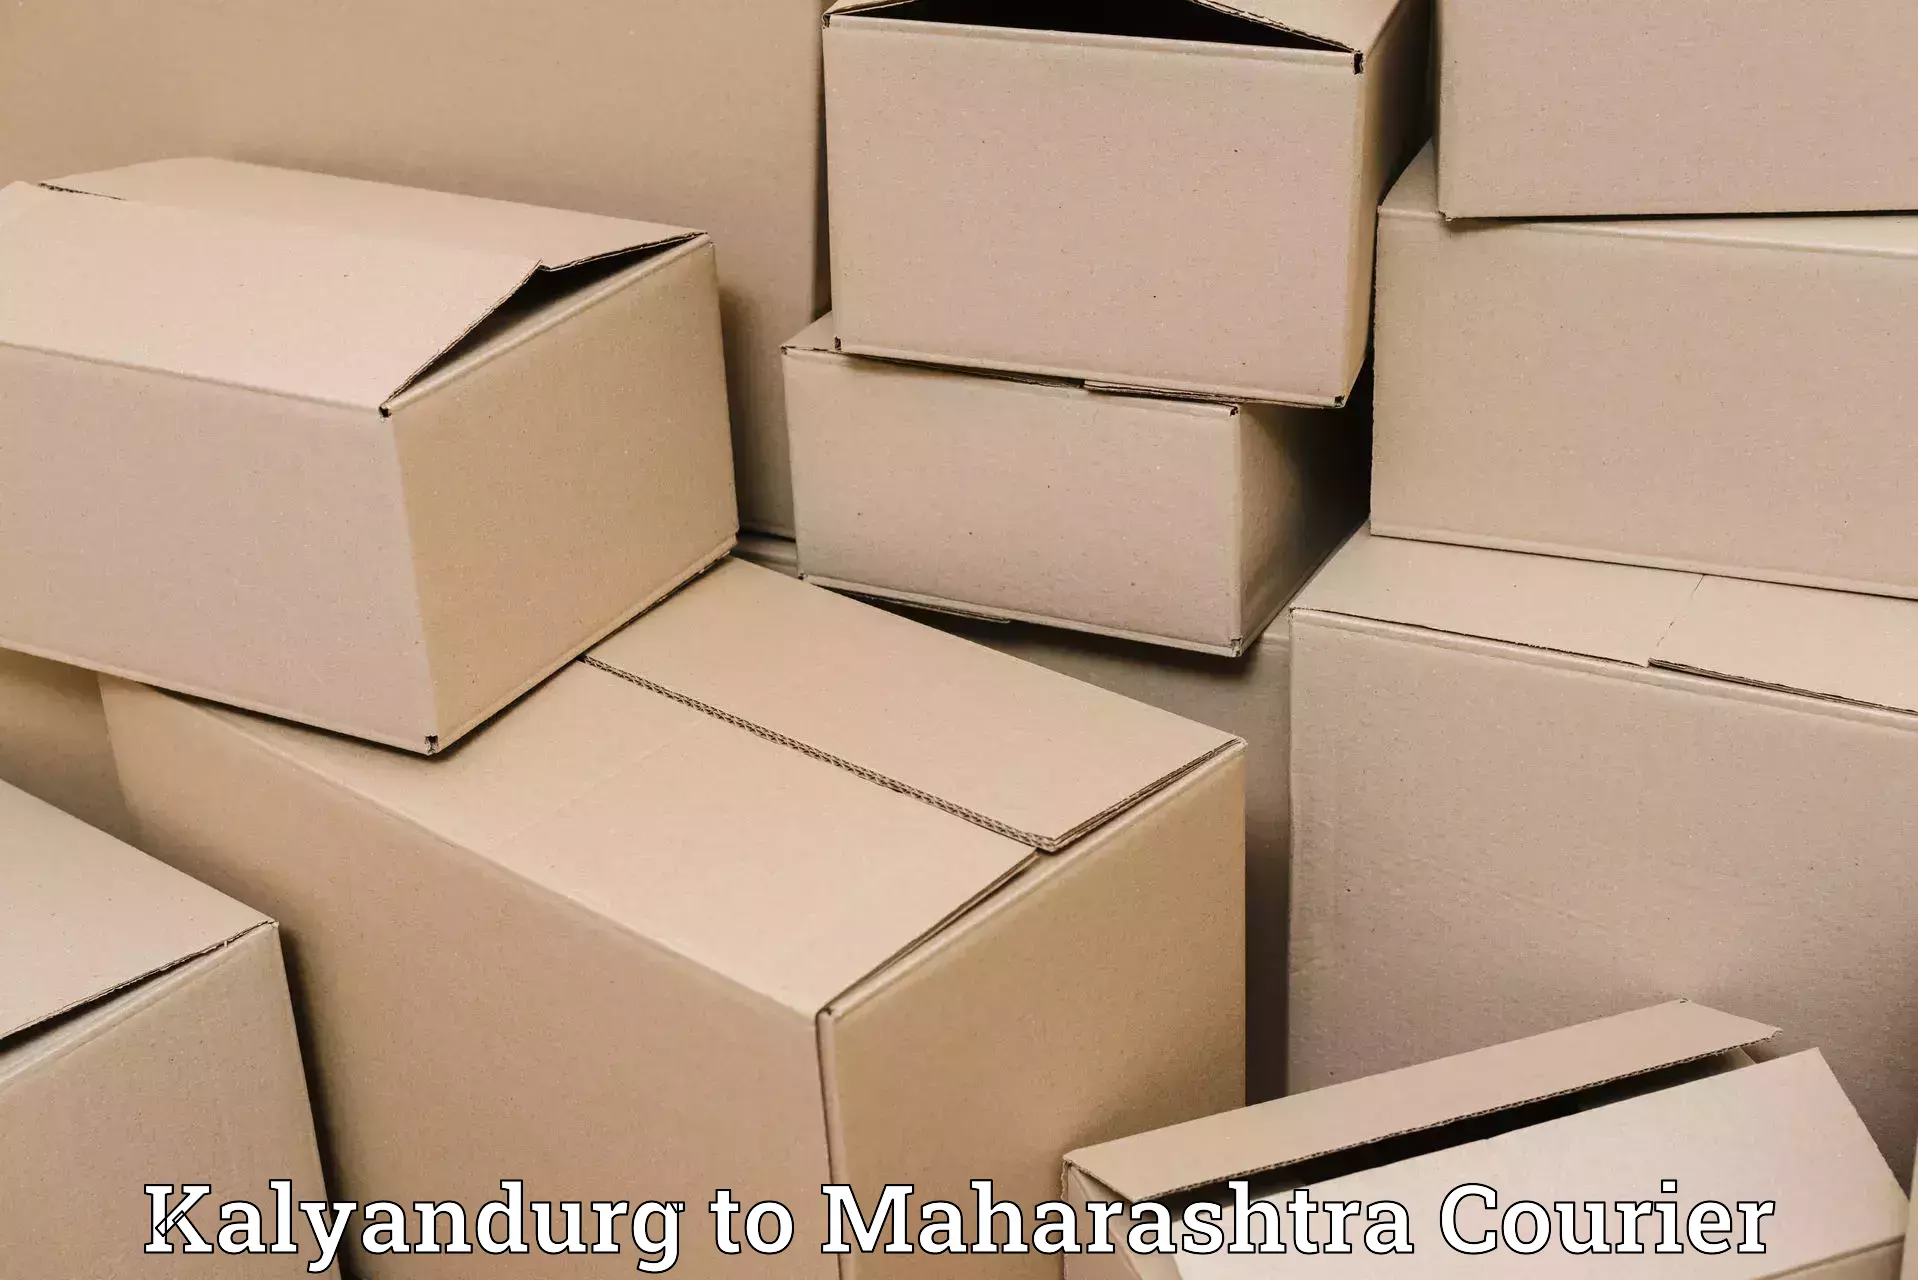 Reliable freight solutions Kalyandurg to Nashik